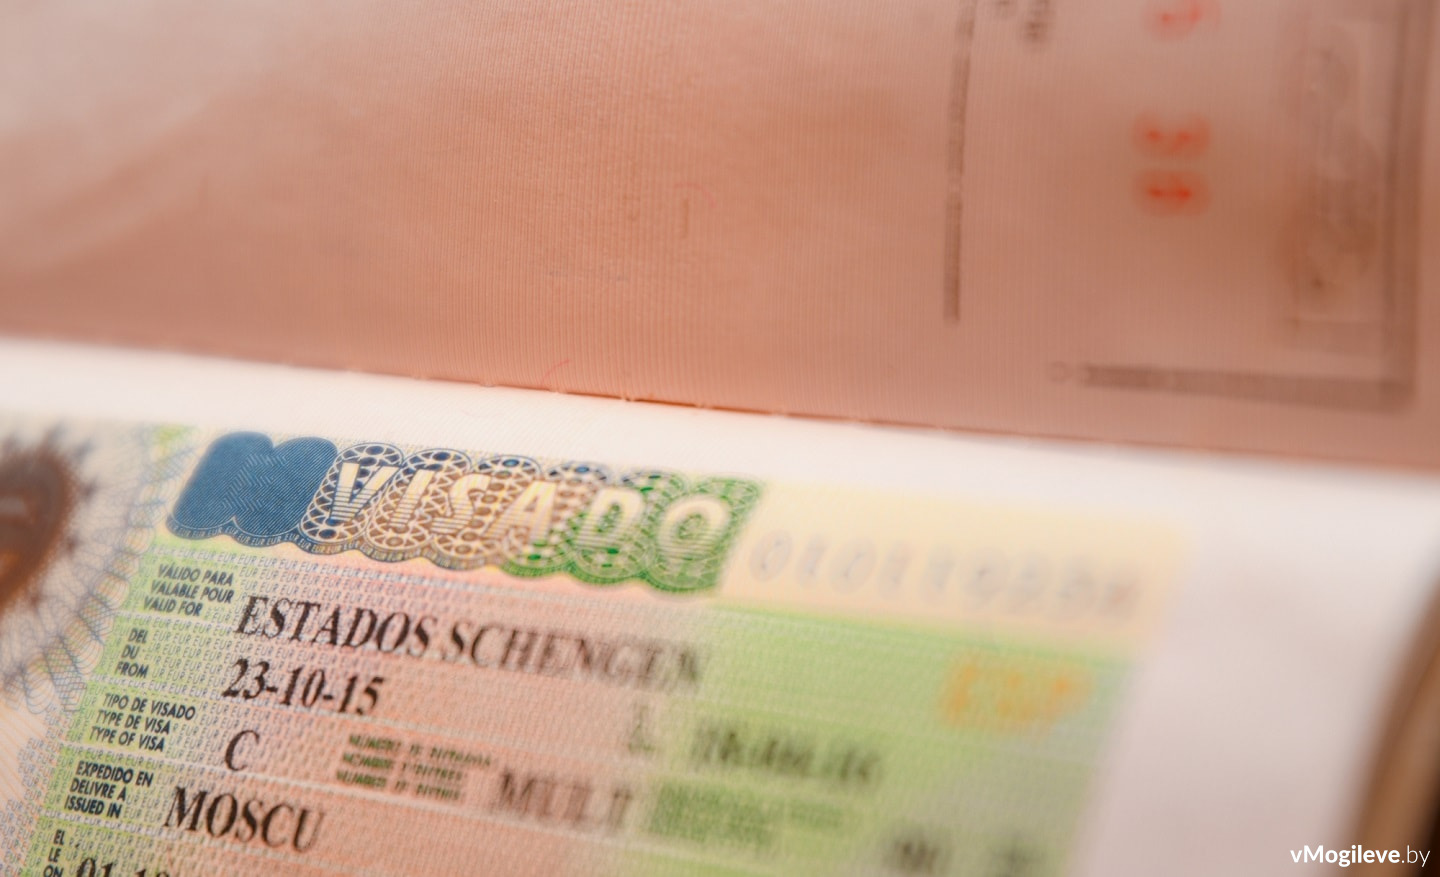 Шенгенская виза в белорусском паспорте. Фотография носит иллюстративный характер